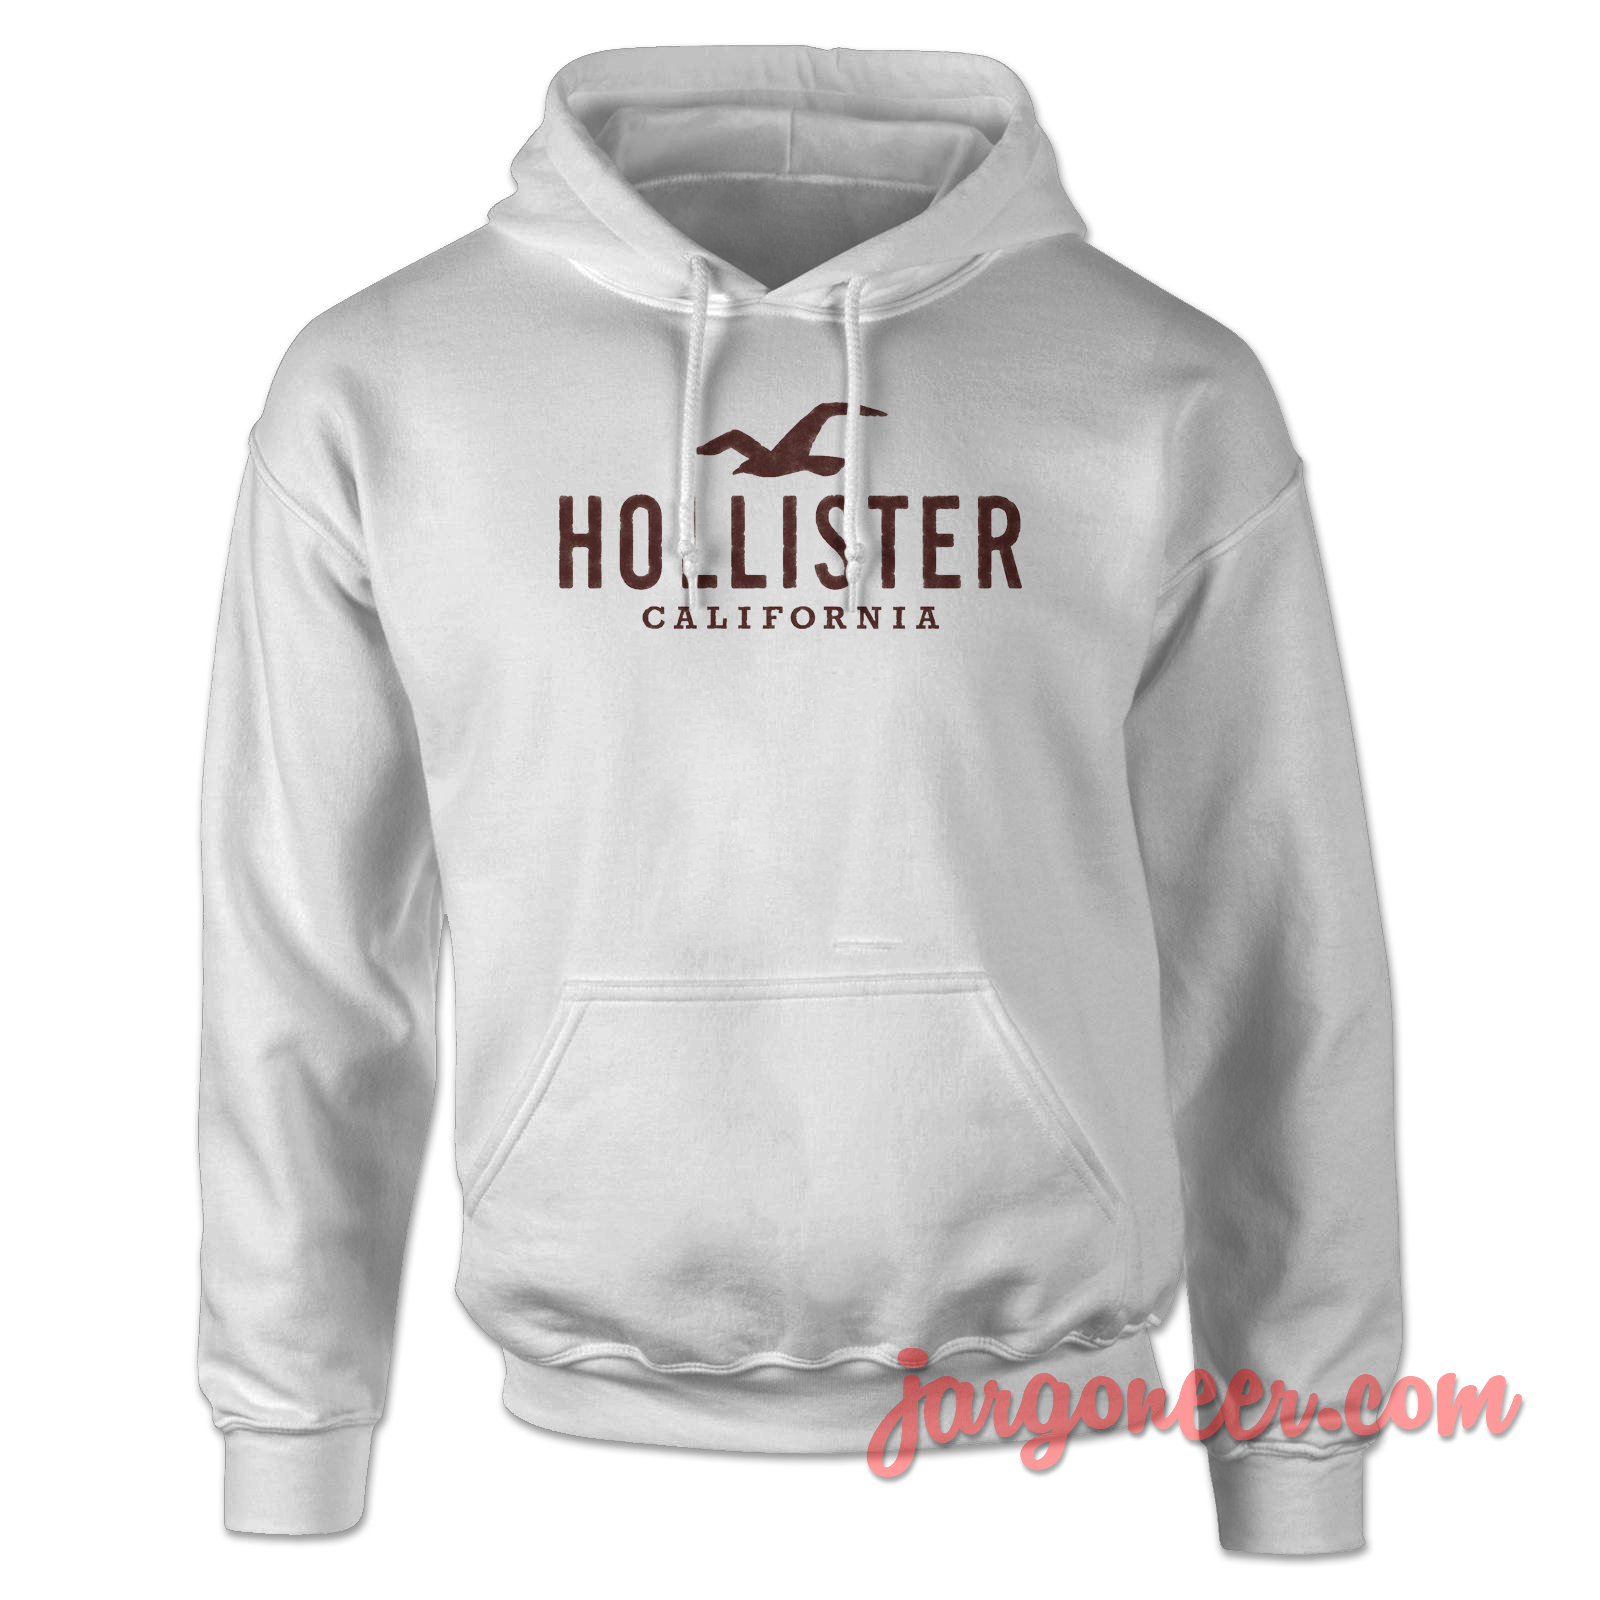 HOLLISTER Hoodies for men, Buy online